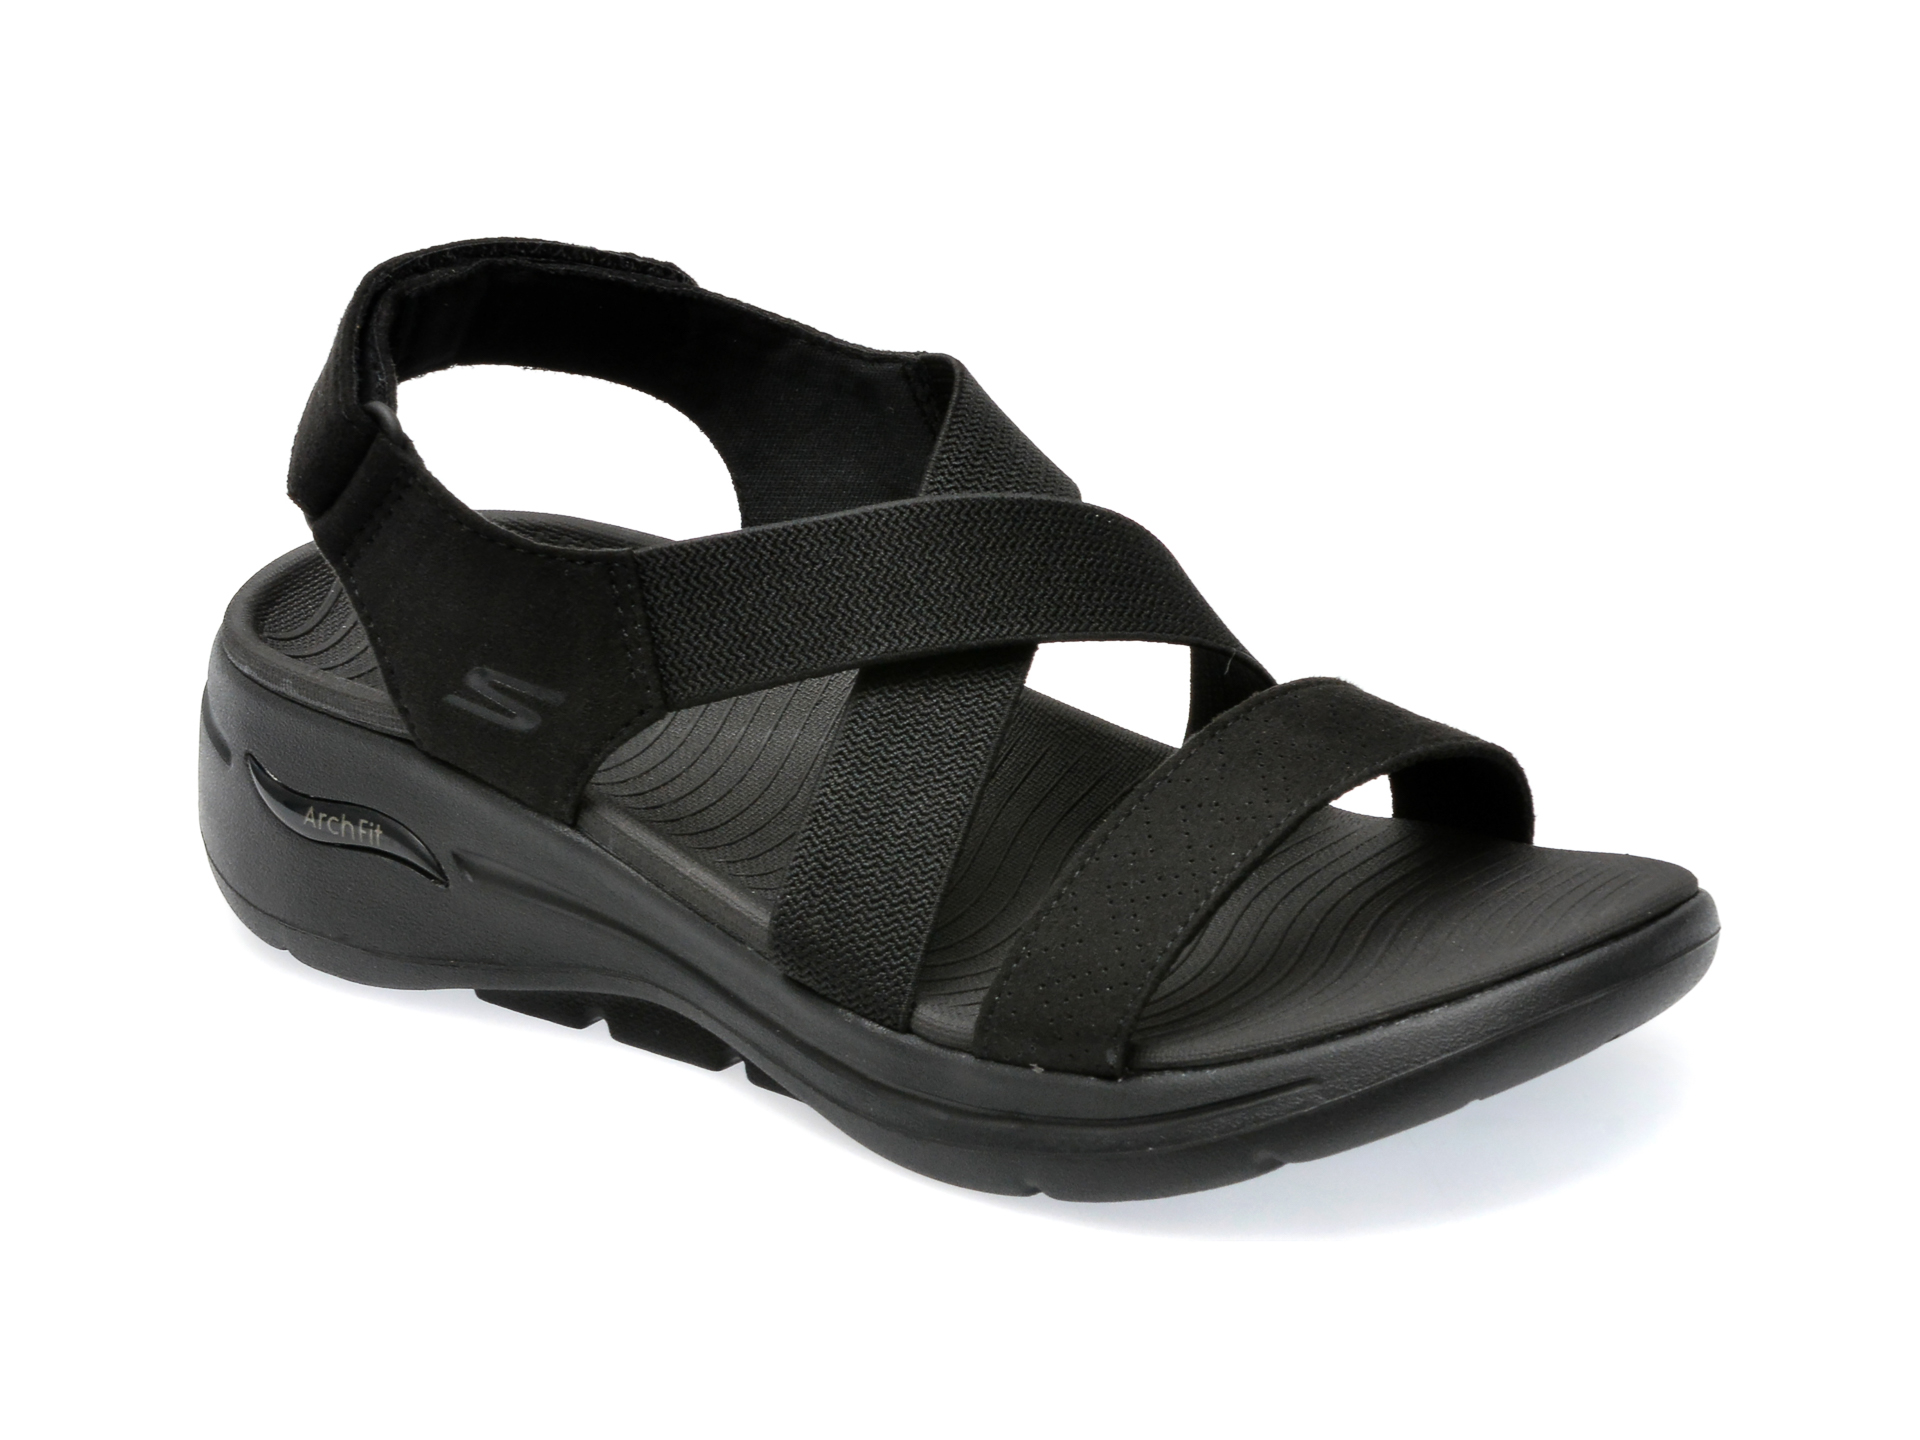 Sandale SKECHERS negre, GO WALK ARCH FIT SANDAL, din material textil /femei/sandale imagine noua